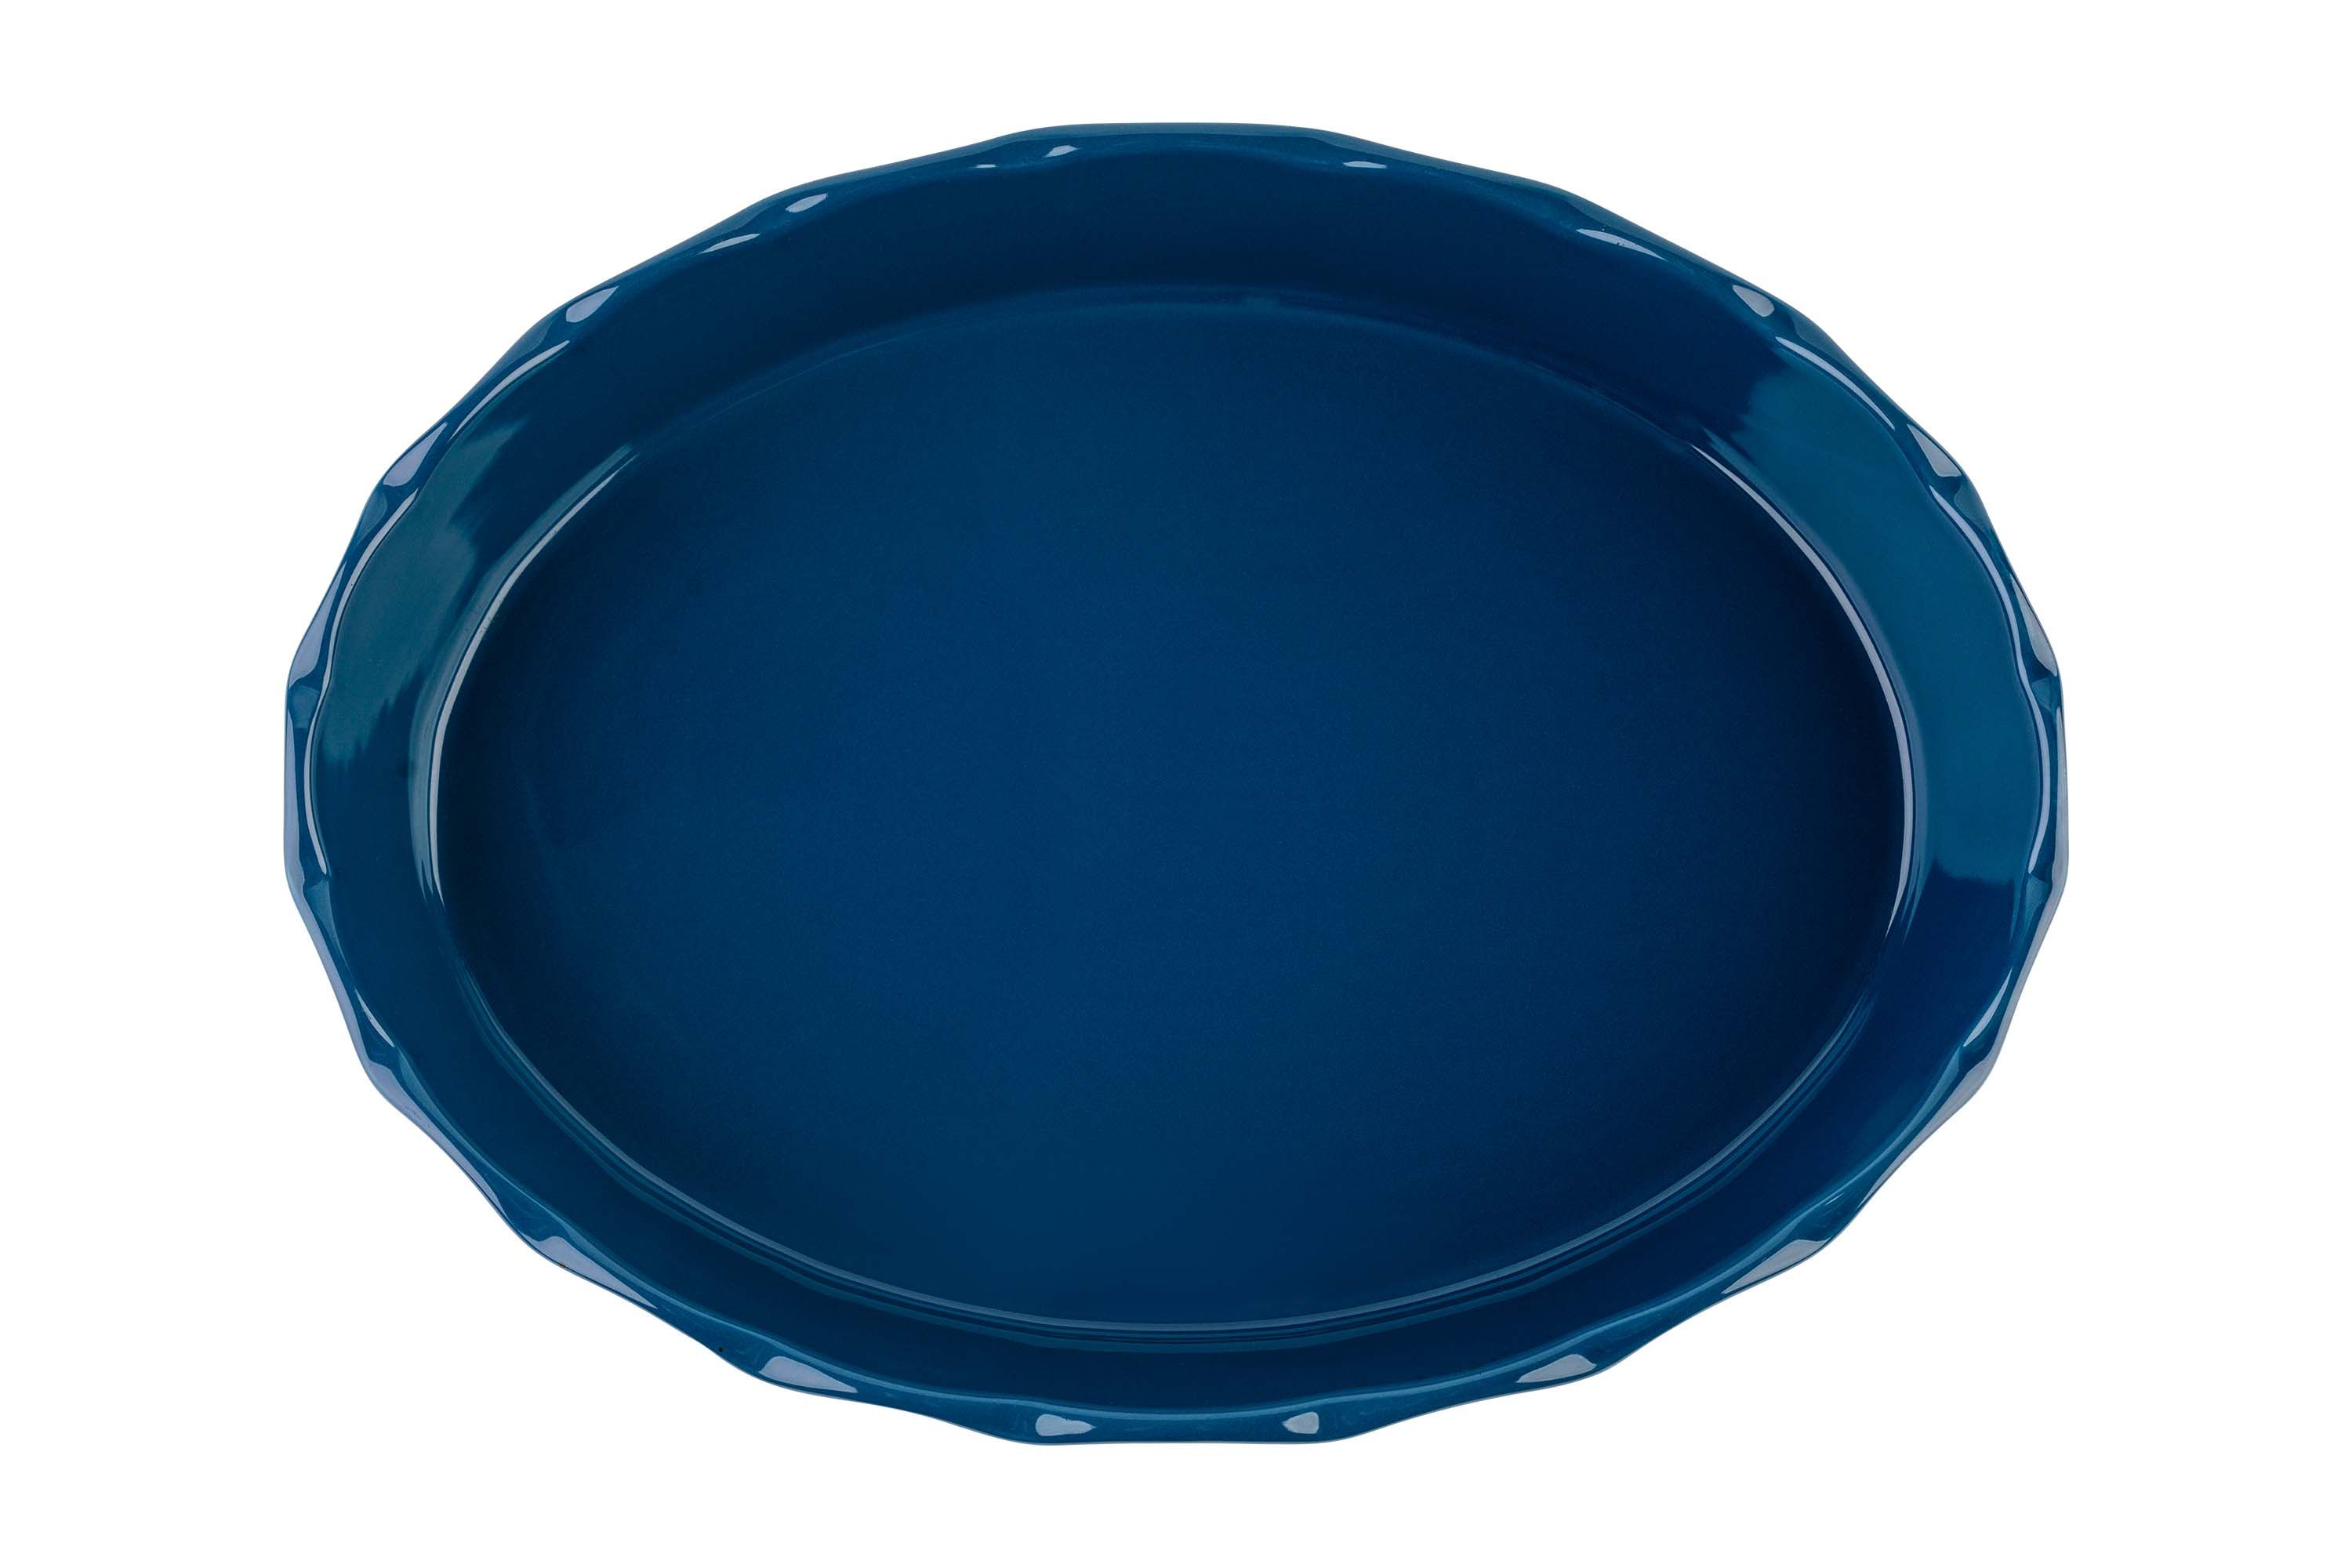 Blick von oben auf die blaue, ovale Stoneware-Ofenform